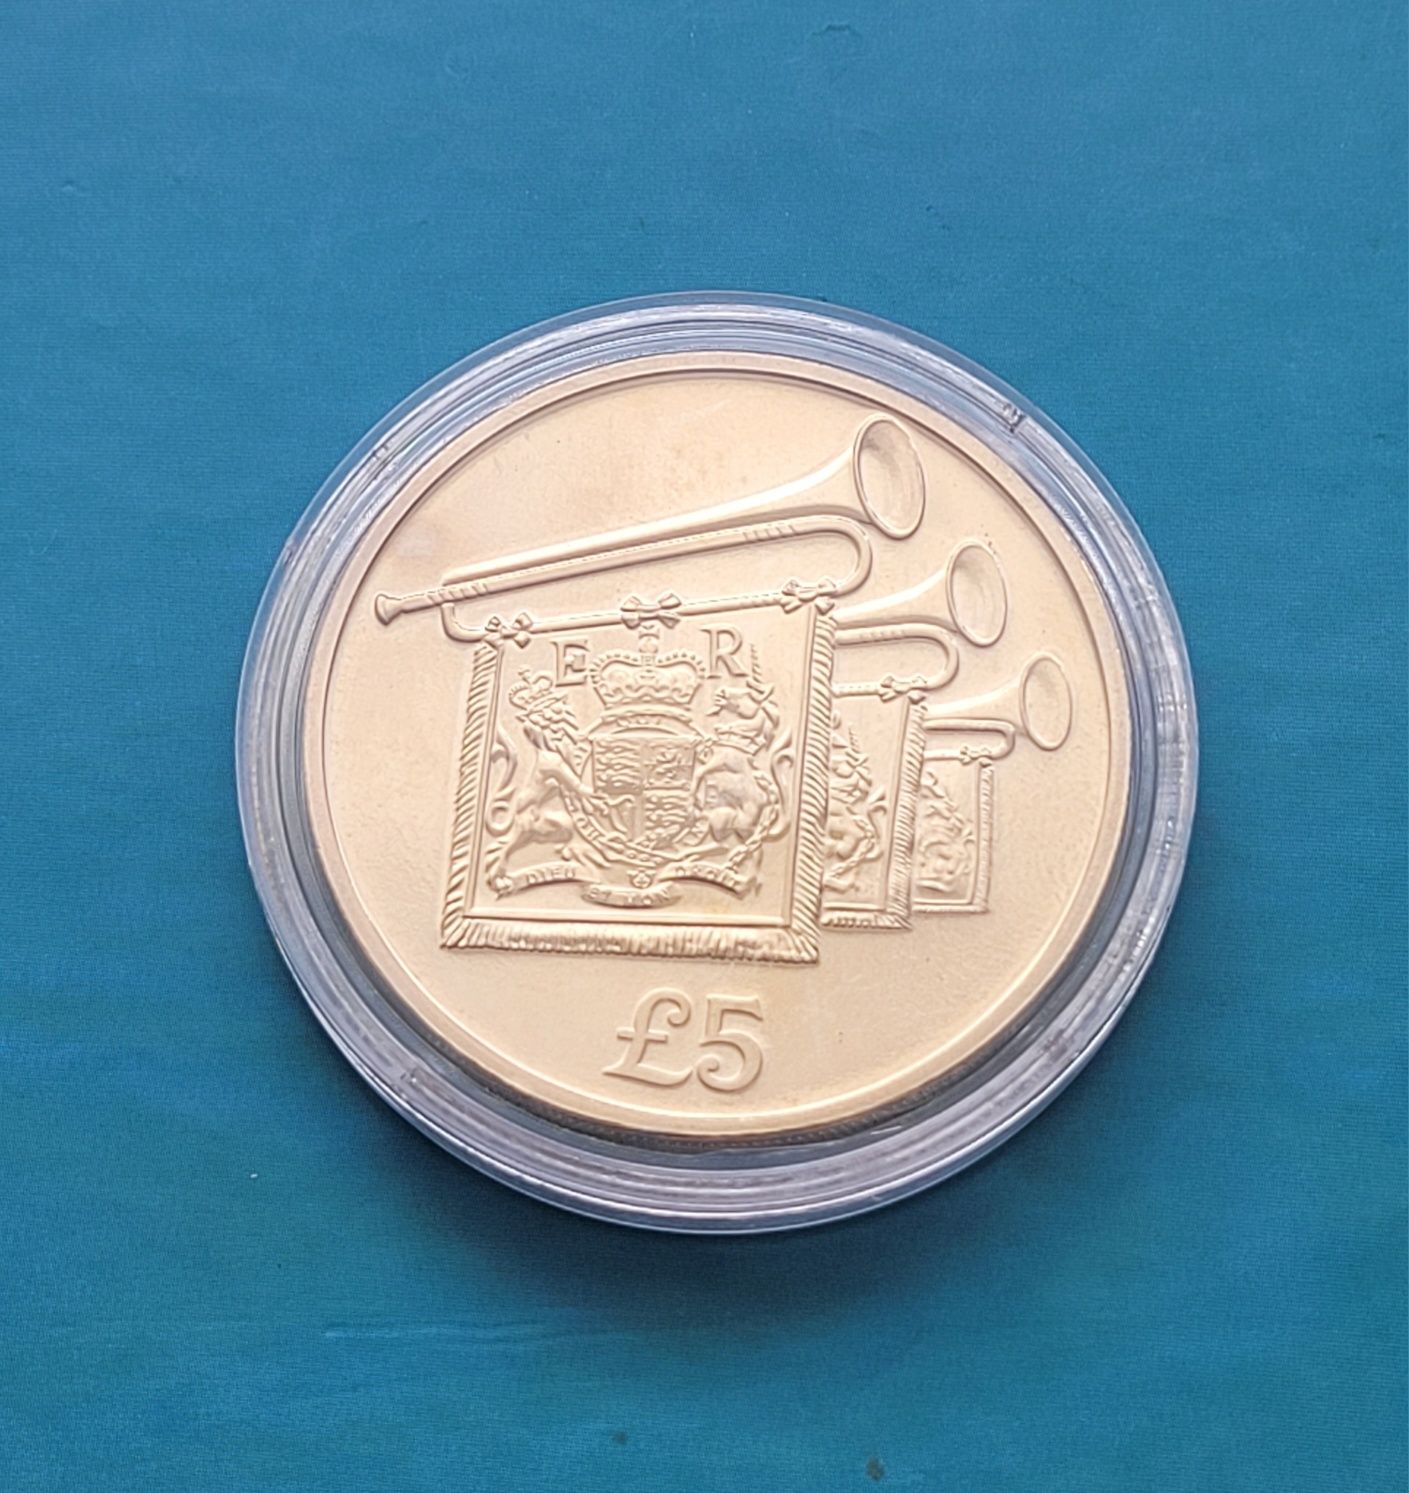 Moneta 5 funtów 2012 - 60ta rocznica wstąpienia na tron Elizabeth II